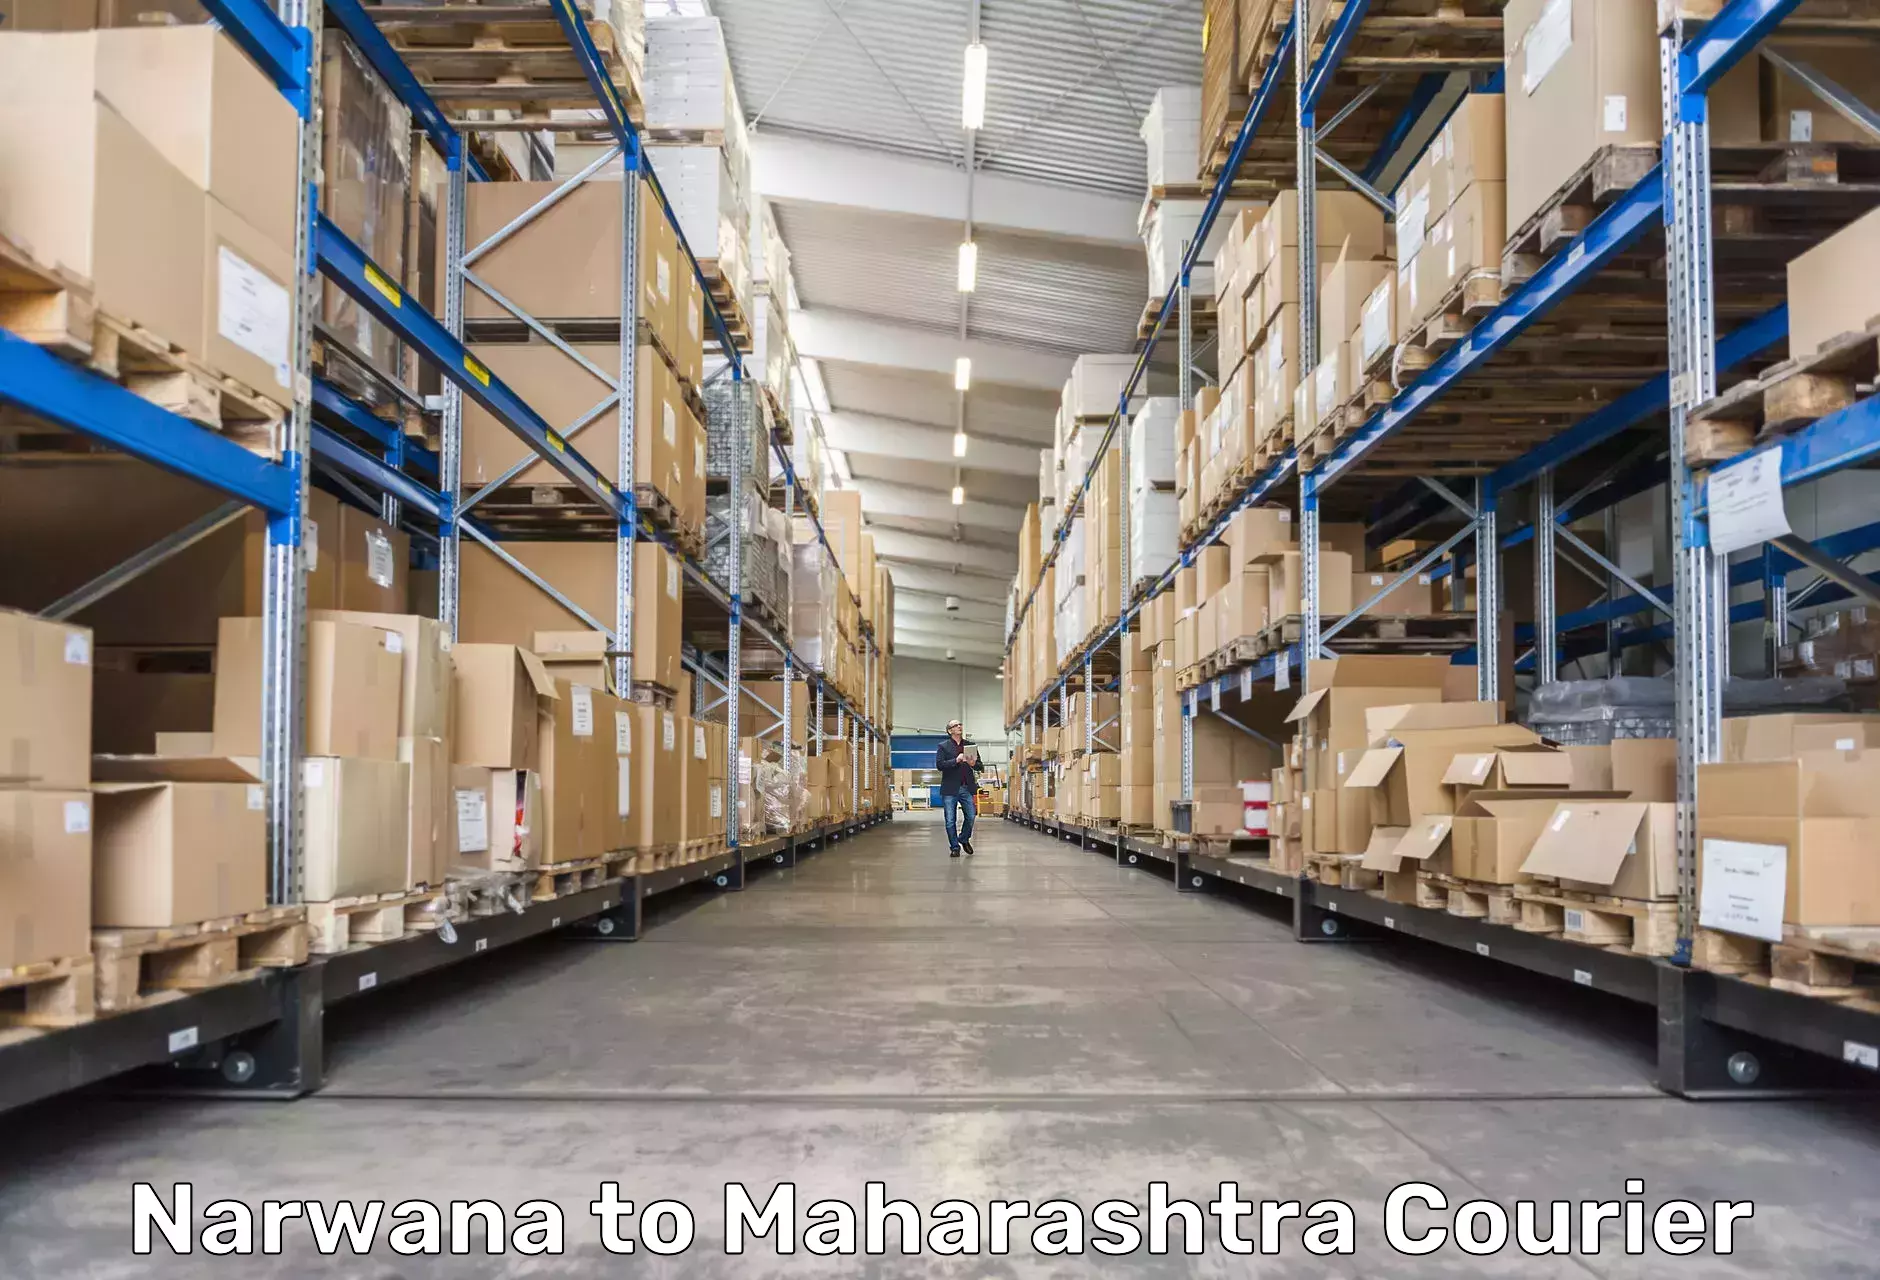 Express logistics service Narwana to Raigarh Maharashtra